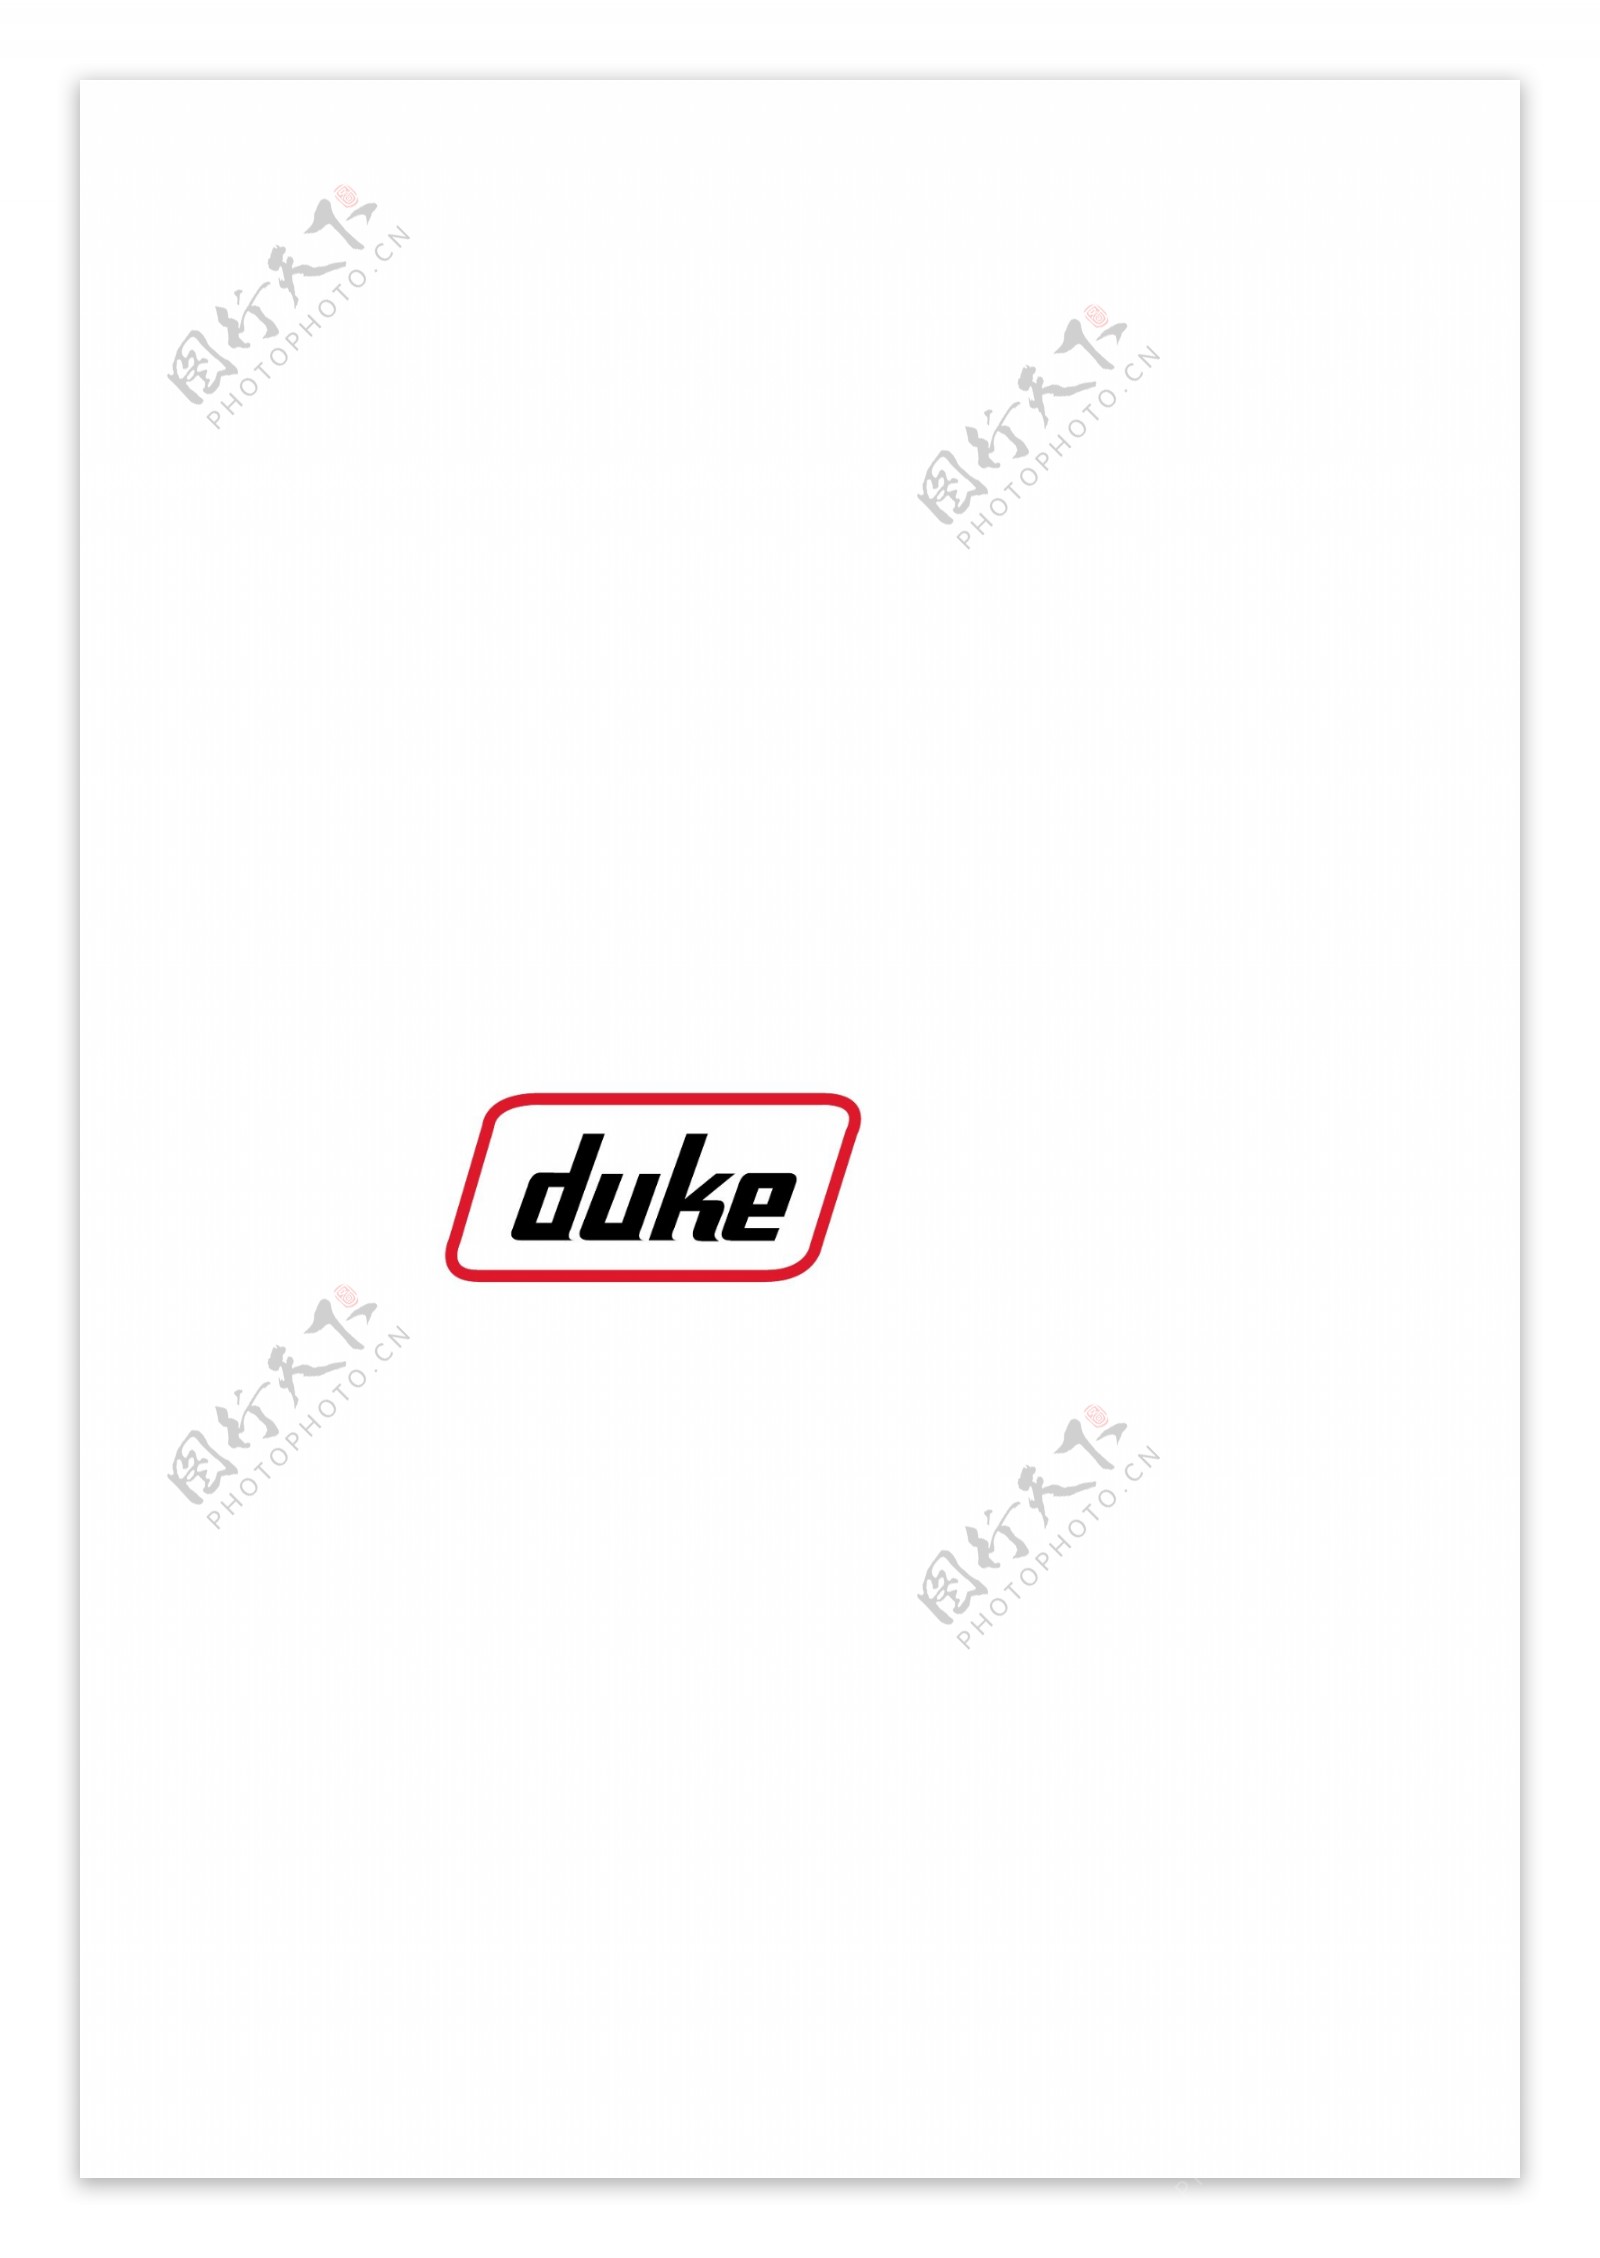 Dukelogo设计欣赏Duke服饰品牌LOGO下载标志设计欣赏